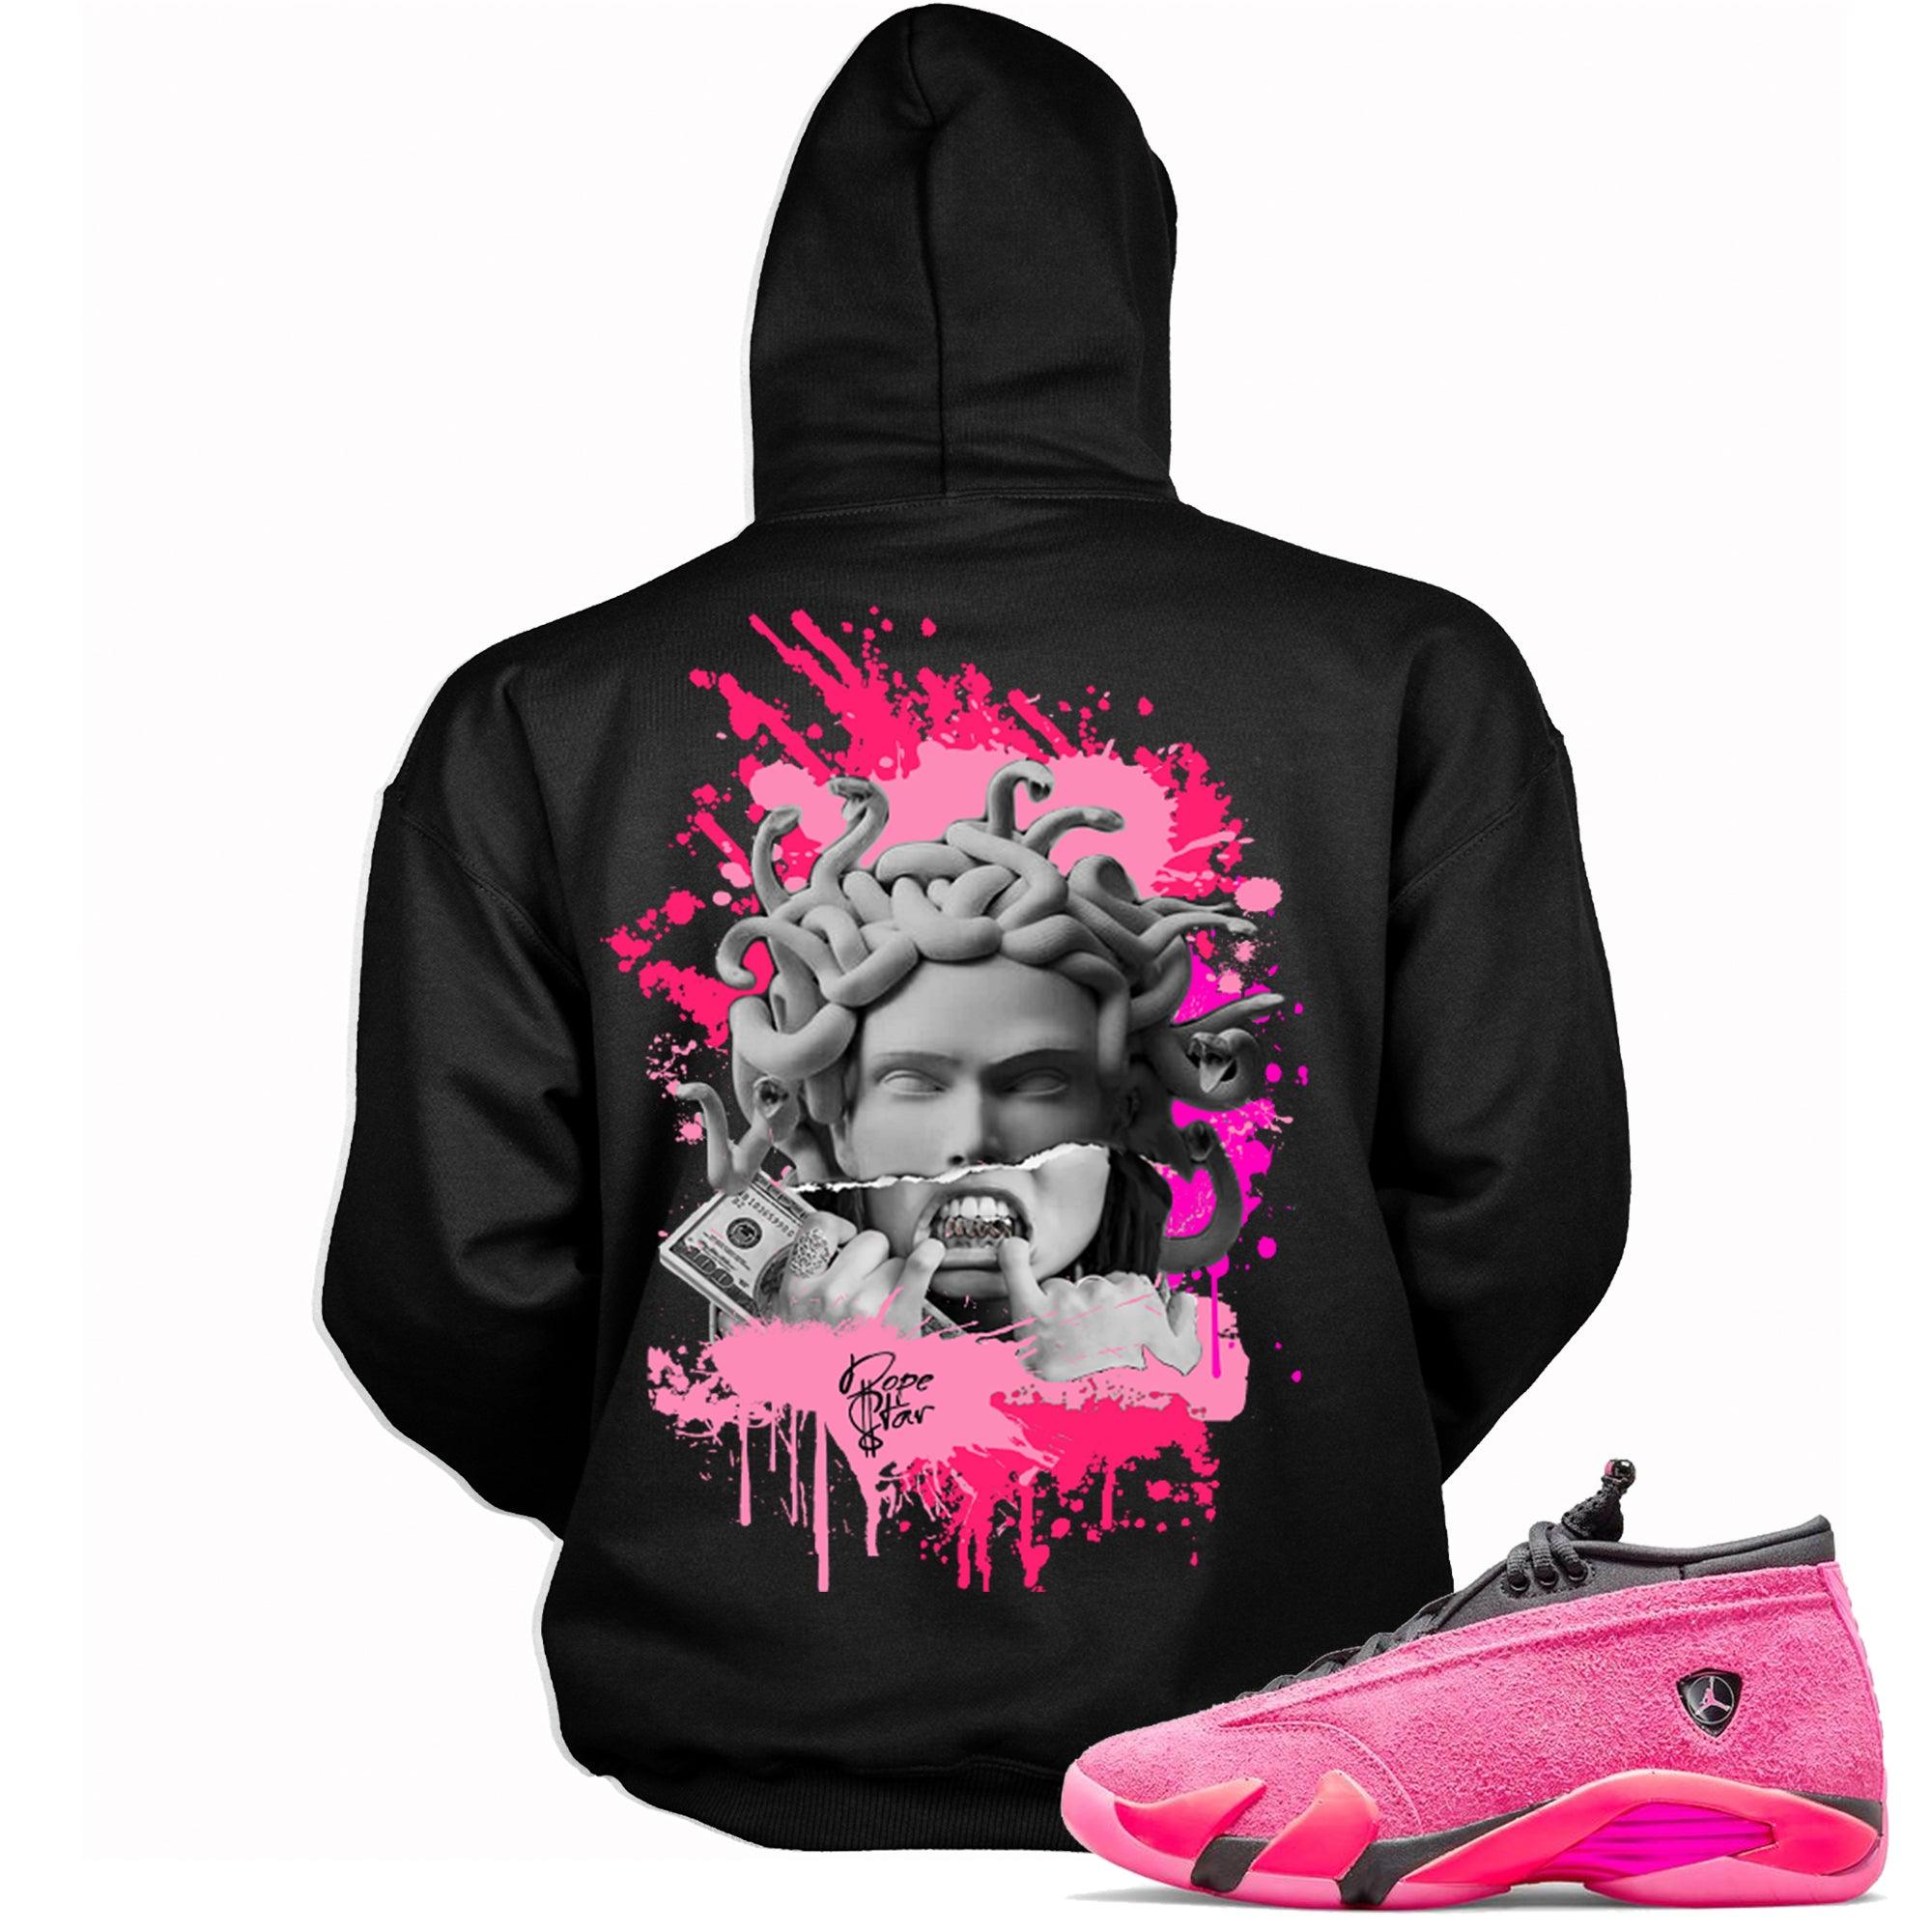 Black Medusa Hoodie Match Air Jordan 14 Low Shocking Pink photo